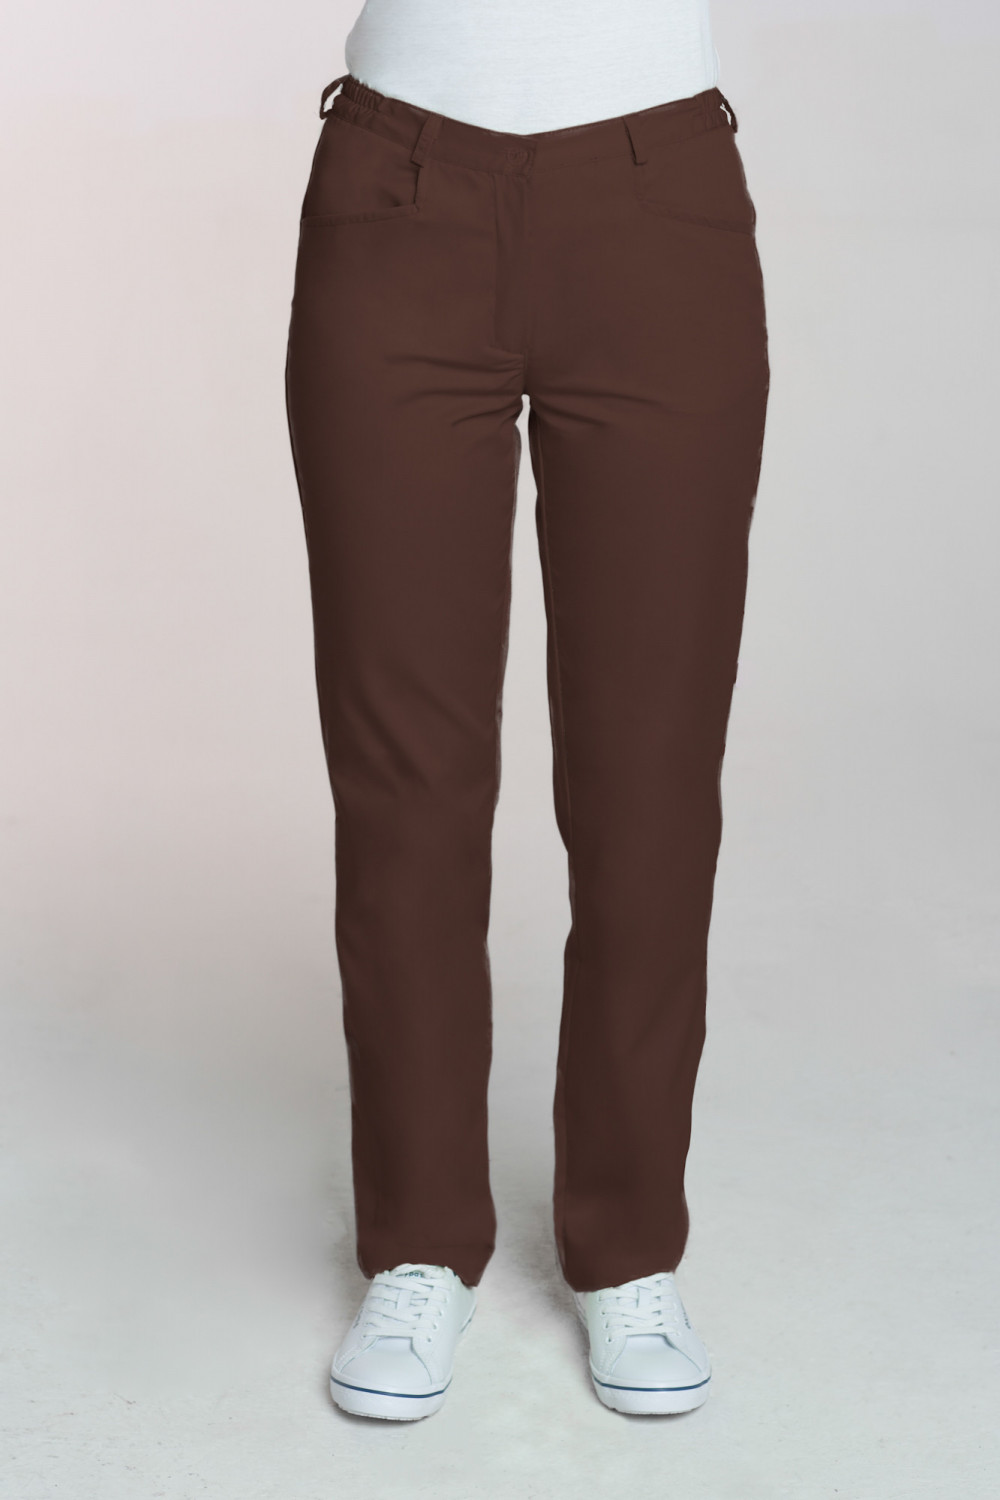 M-348 Spodnie damskie medyczne do fartucha kolor czekolada